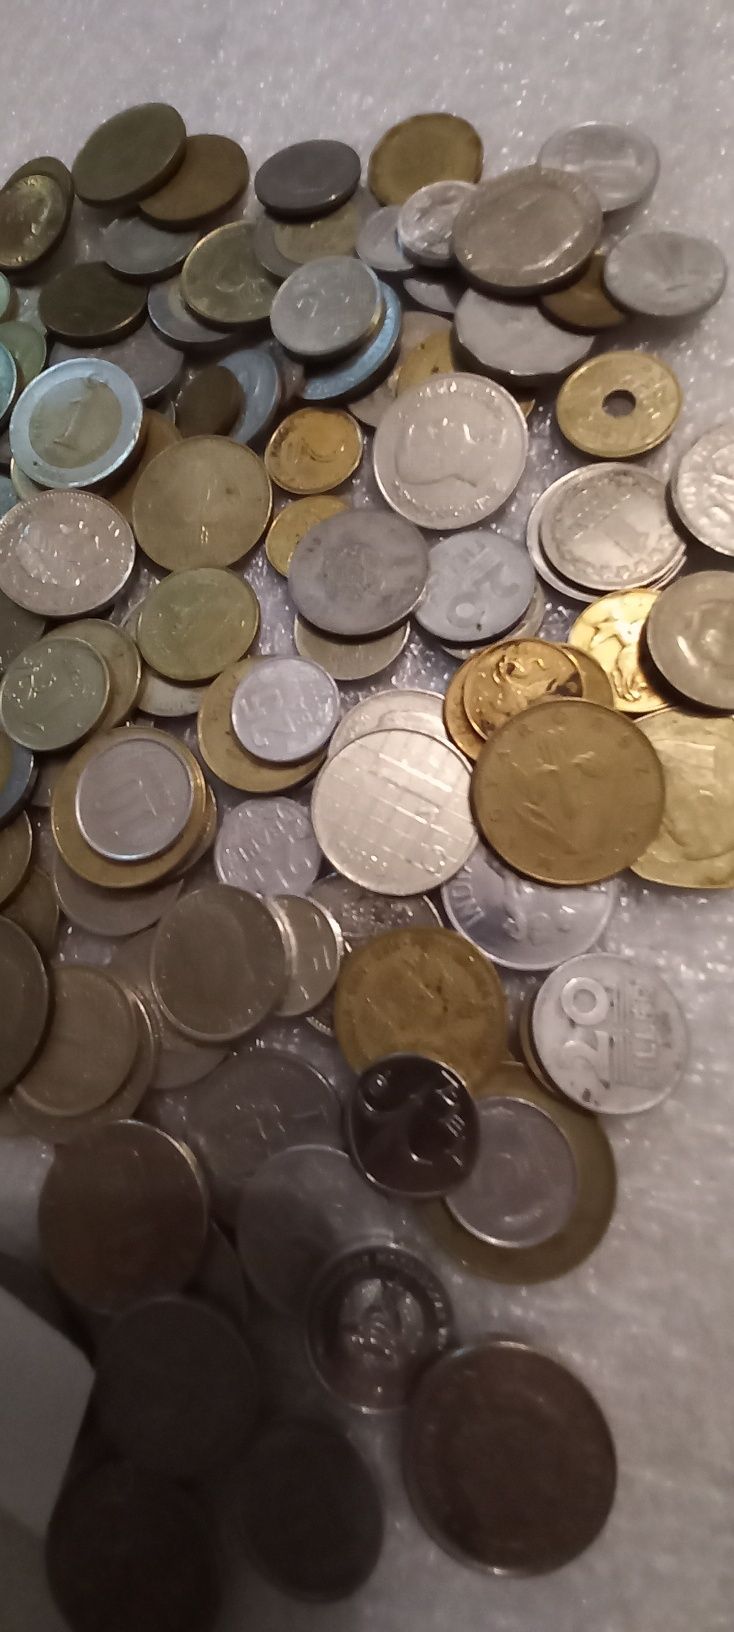 Монеты мира разные страны без СССР